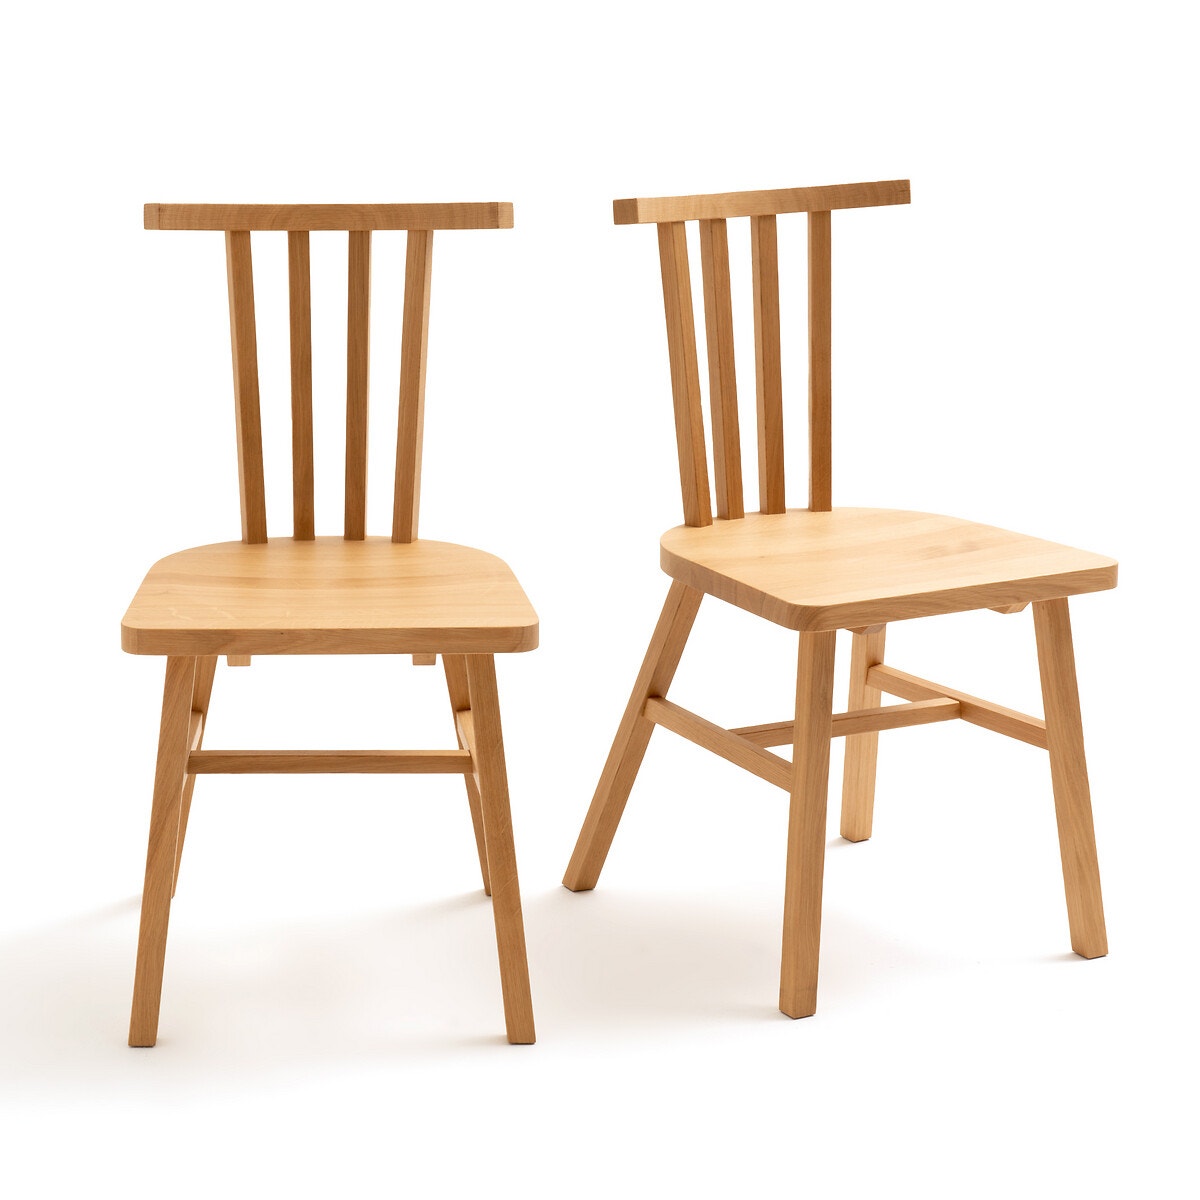 Σπίτι > Έπιπλα > Τραπεζαρία > Καρέκλες, σκαμπό, πάγκοι > Καρέκλες Σετ 2 καρέκλες με κάγκελα από μασίφ ξύλο δρυ Μ43xΥ83cm